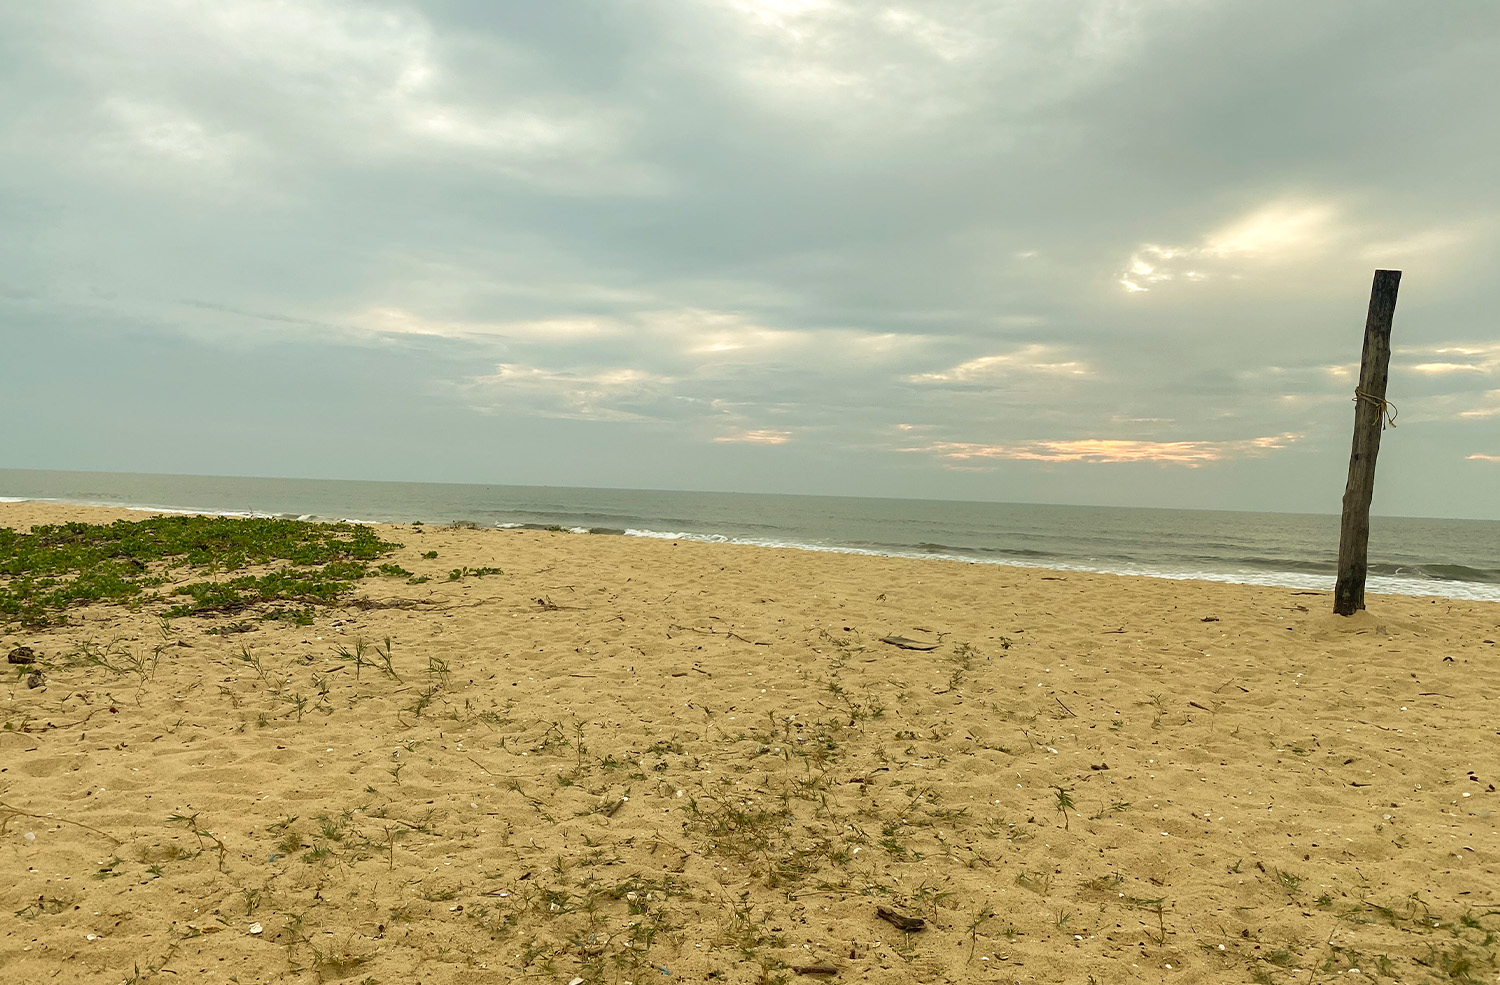 Tannirbhavi Beach in Mangalore